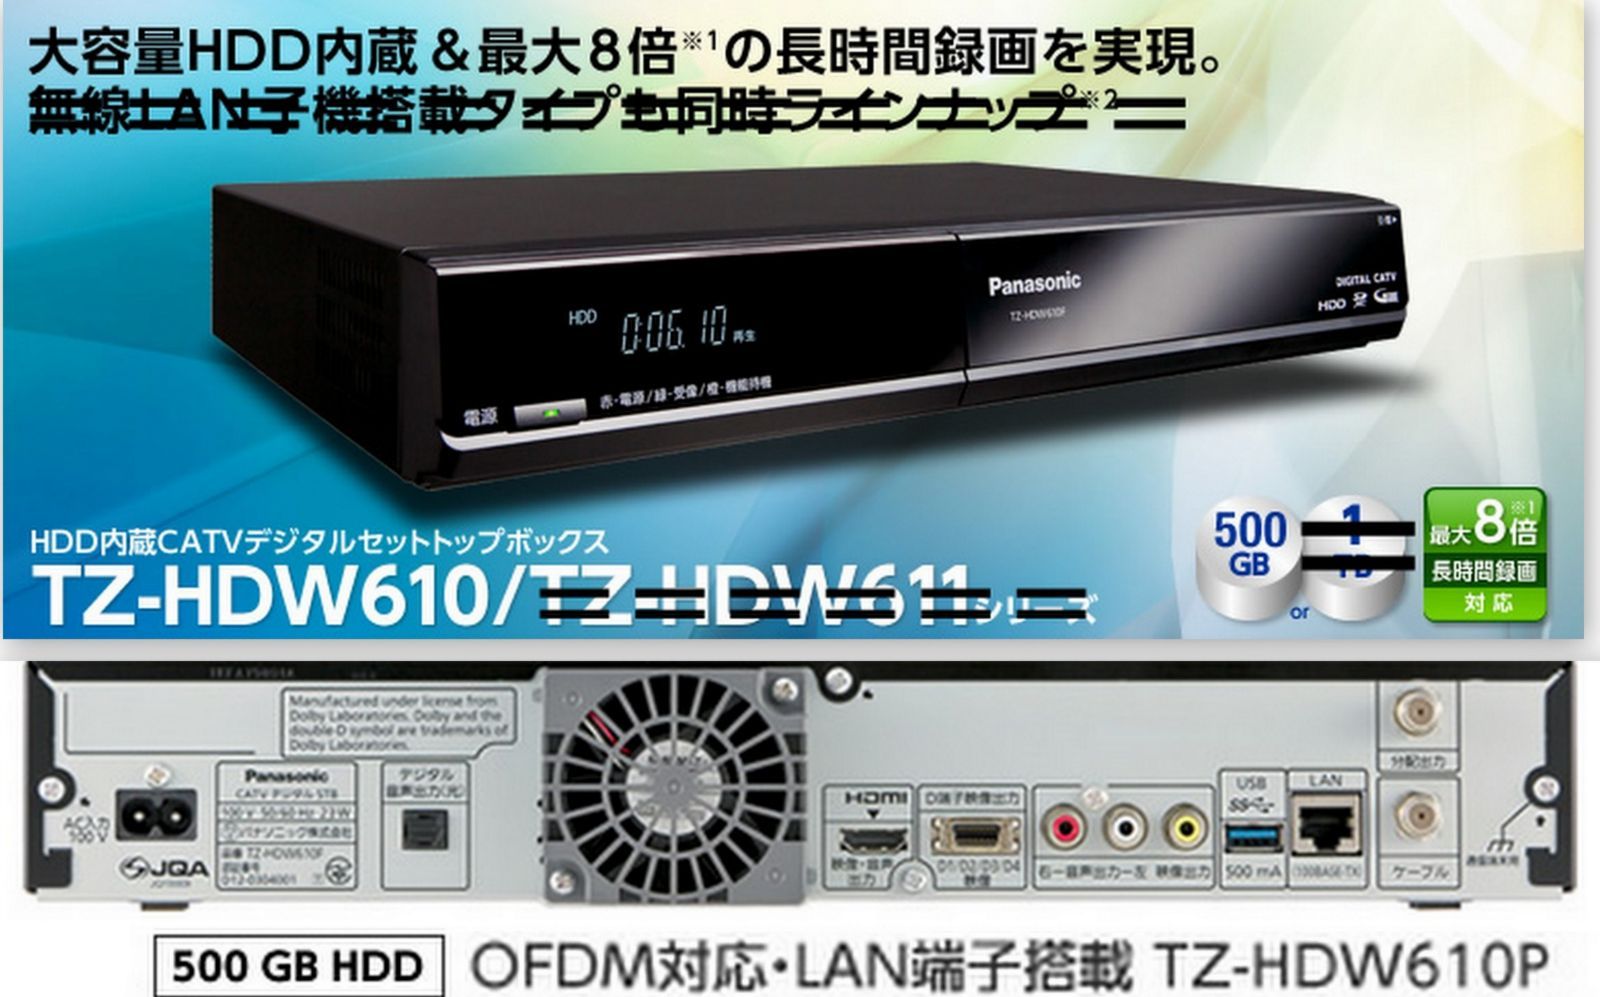 録画OK [HDD1TB] 地デジチューナーPanasonic CATV STB - その他